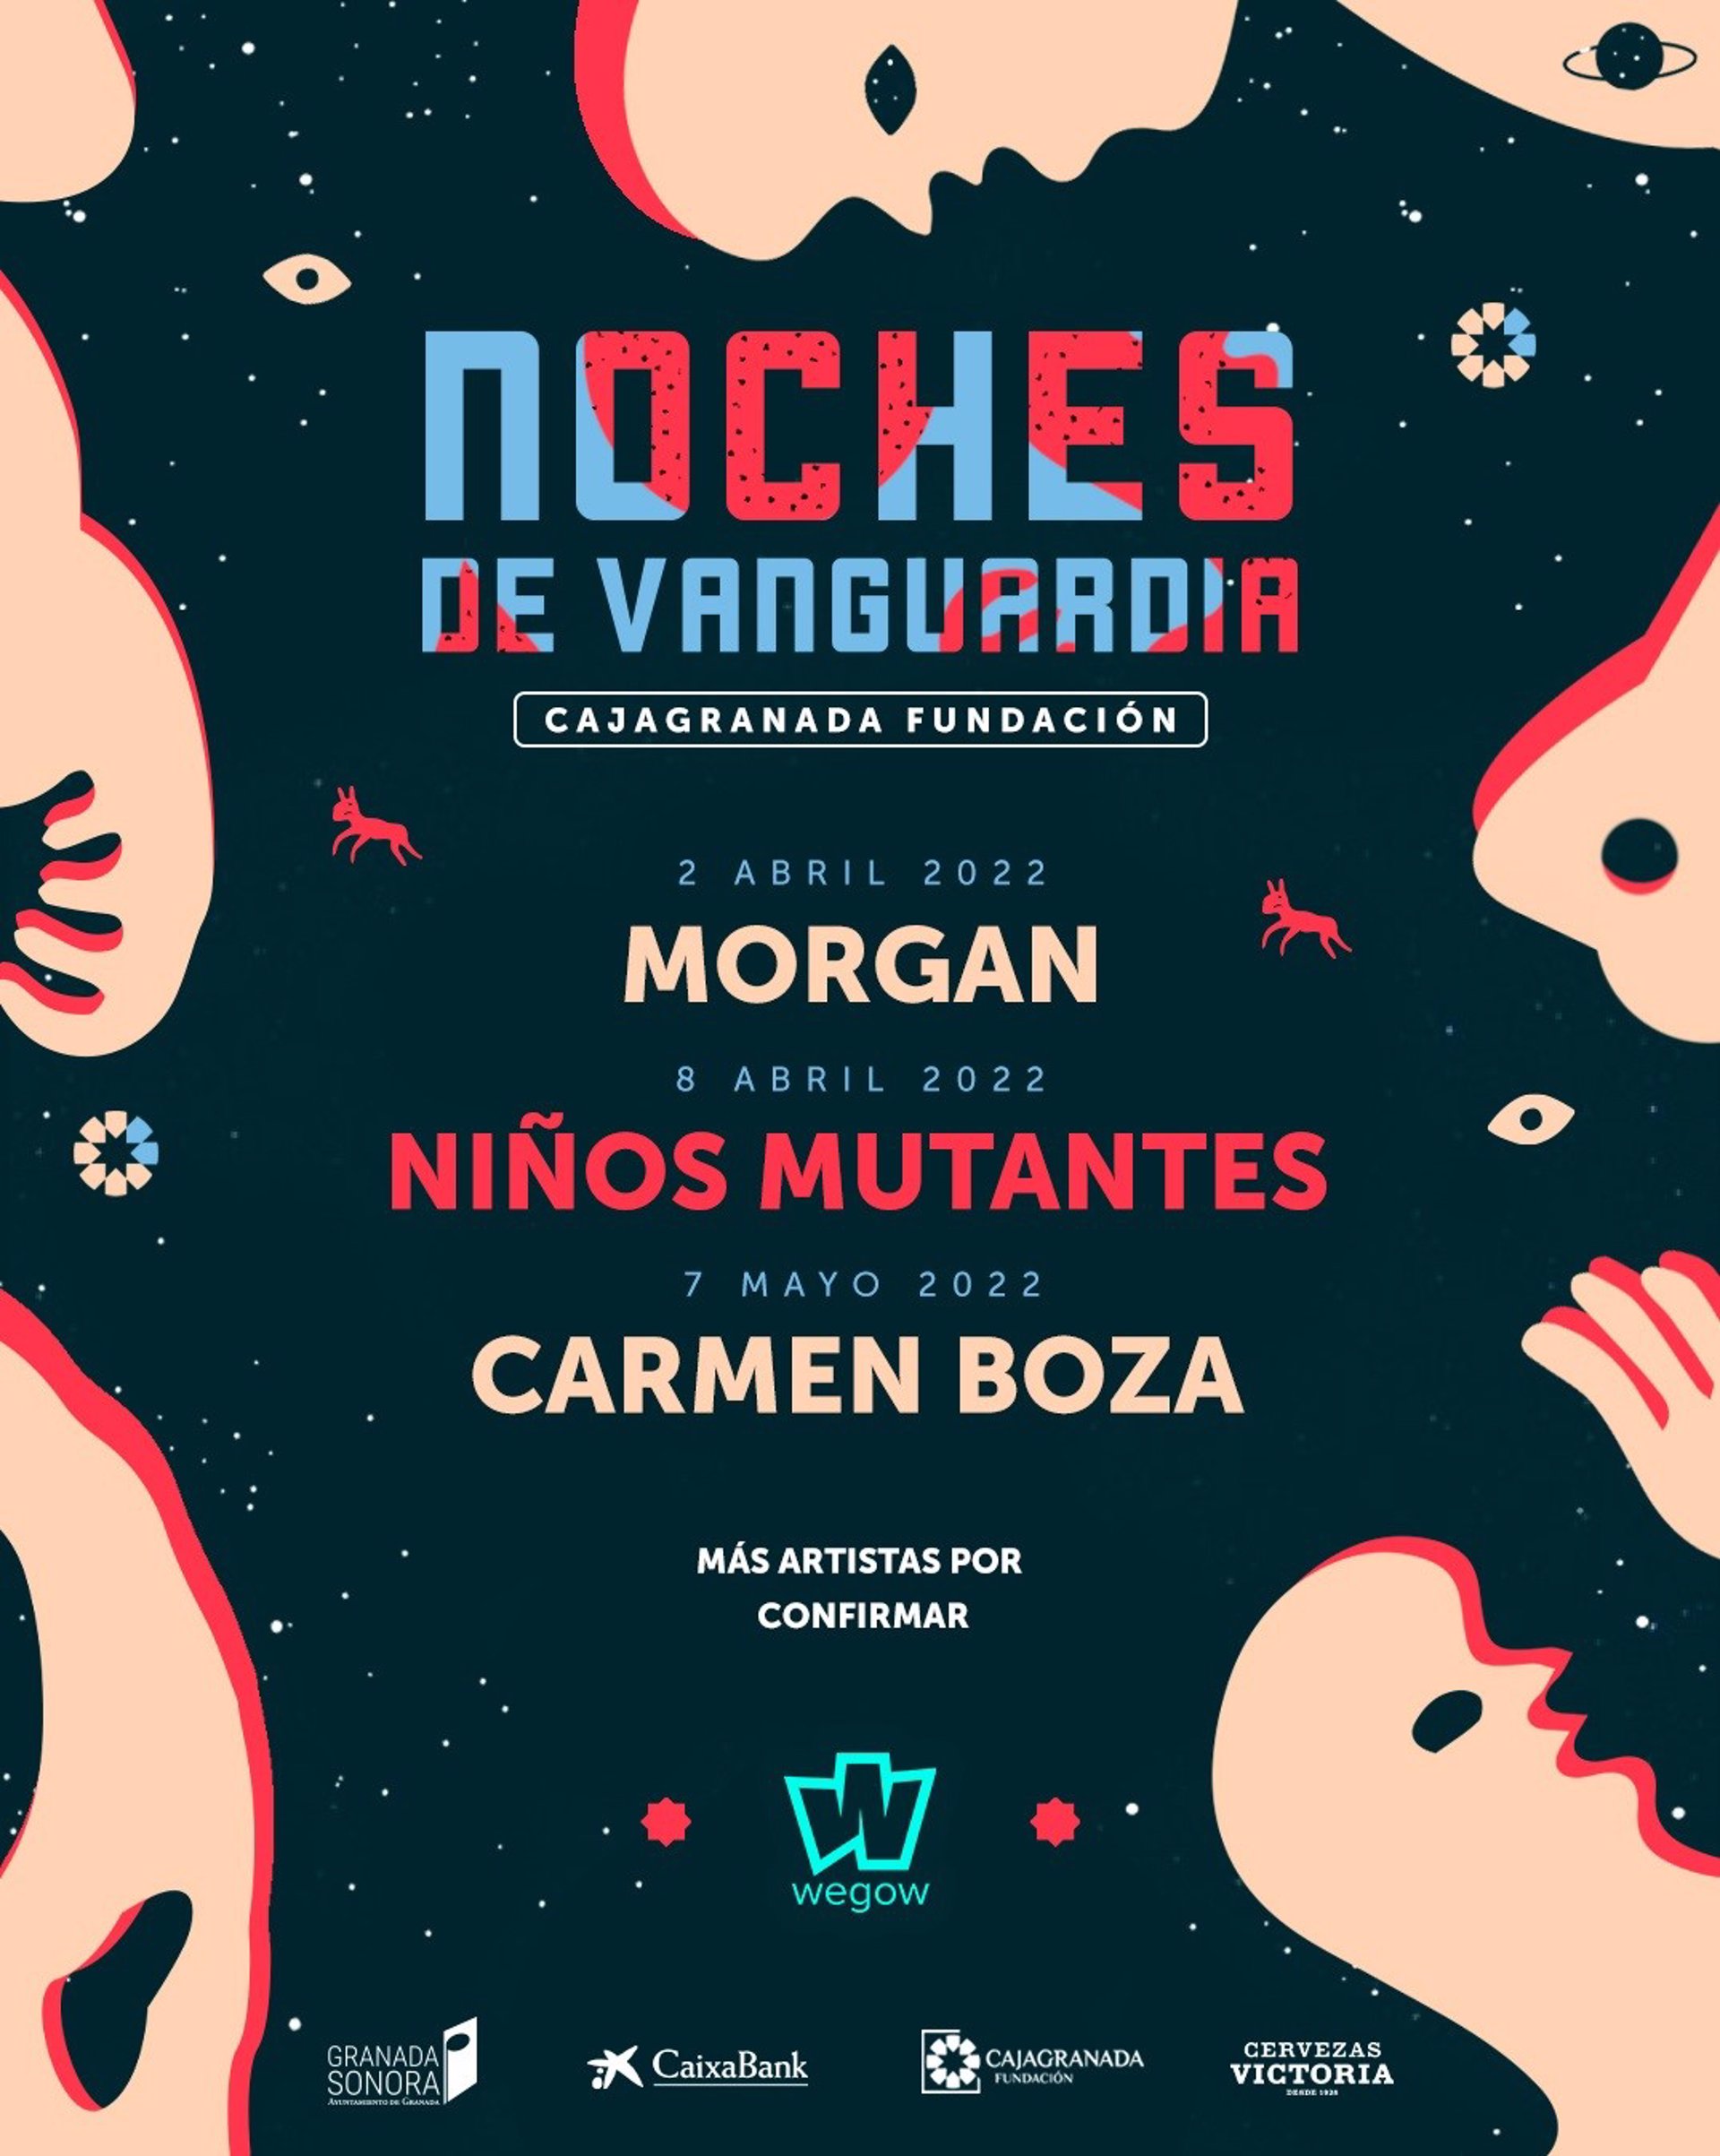 Granada estrena en abril un ciclo de conciertos con Morgan, Niños Mutantes y Carmen Boza en el cartel